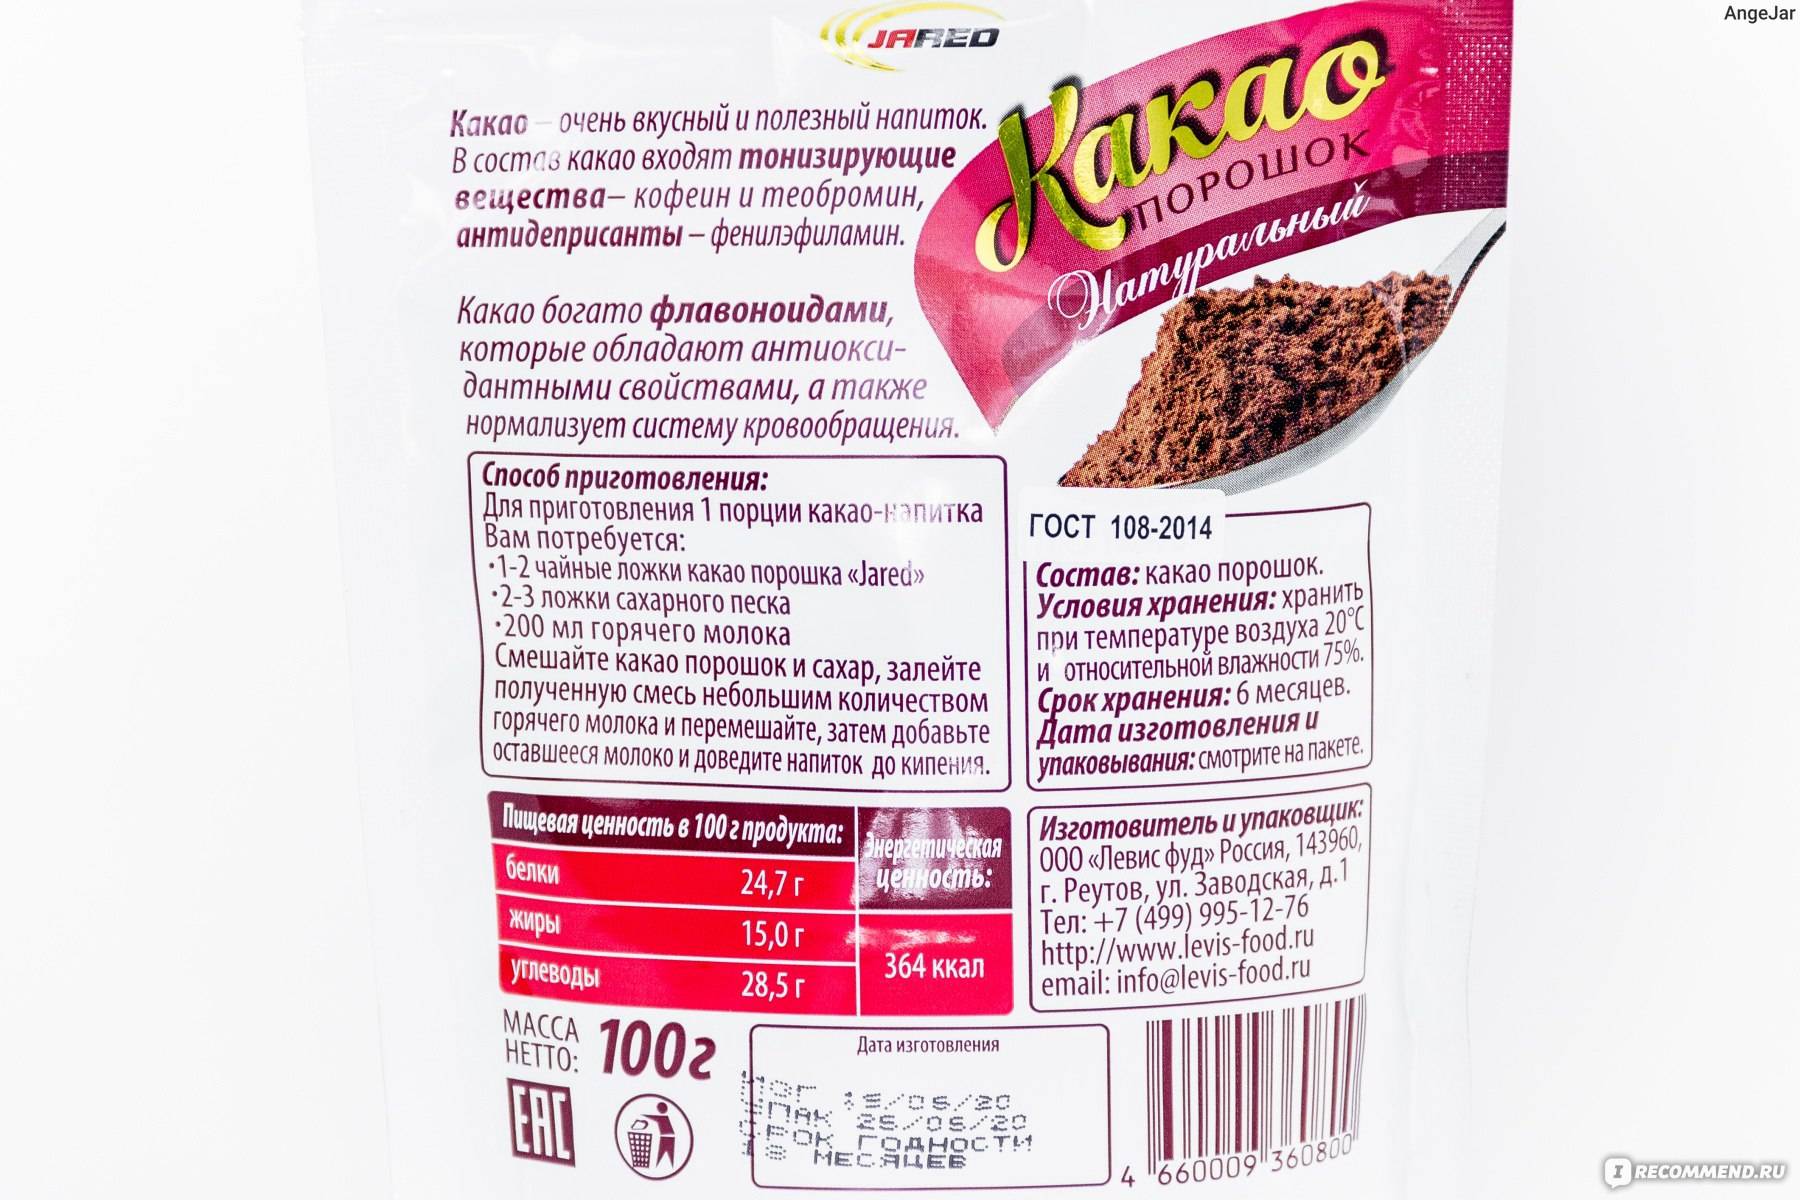 Какао-порошок — химический состав, пищевая ценность, бжу